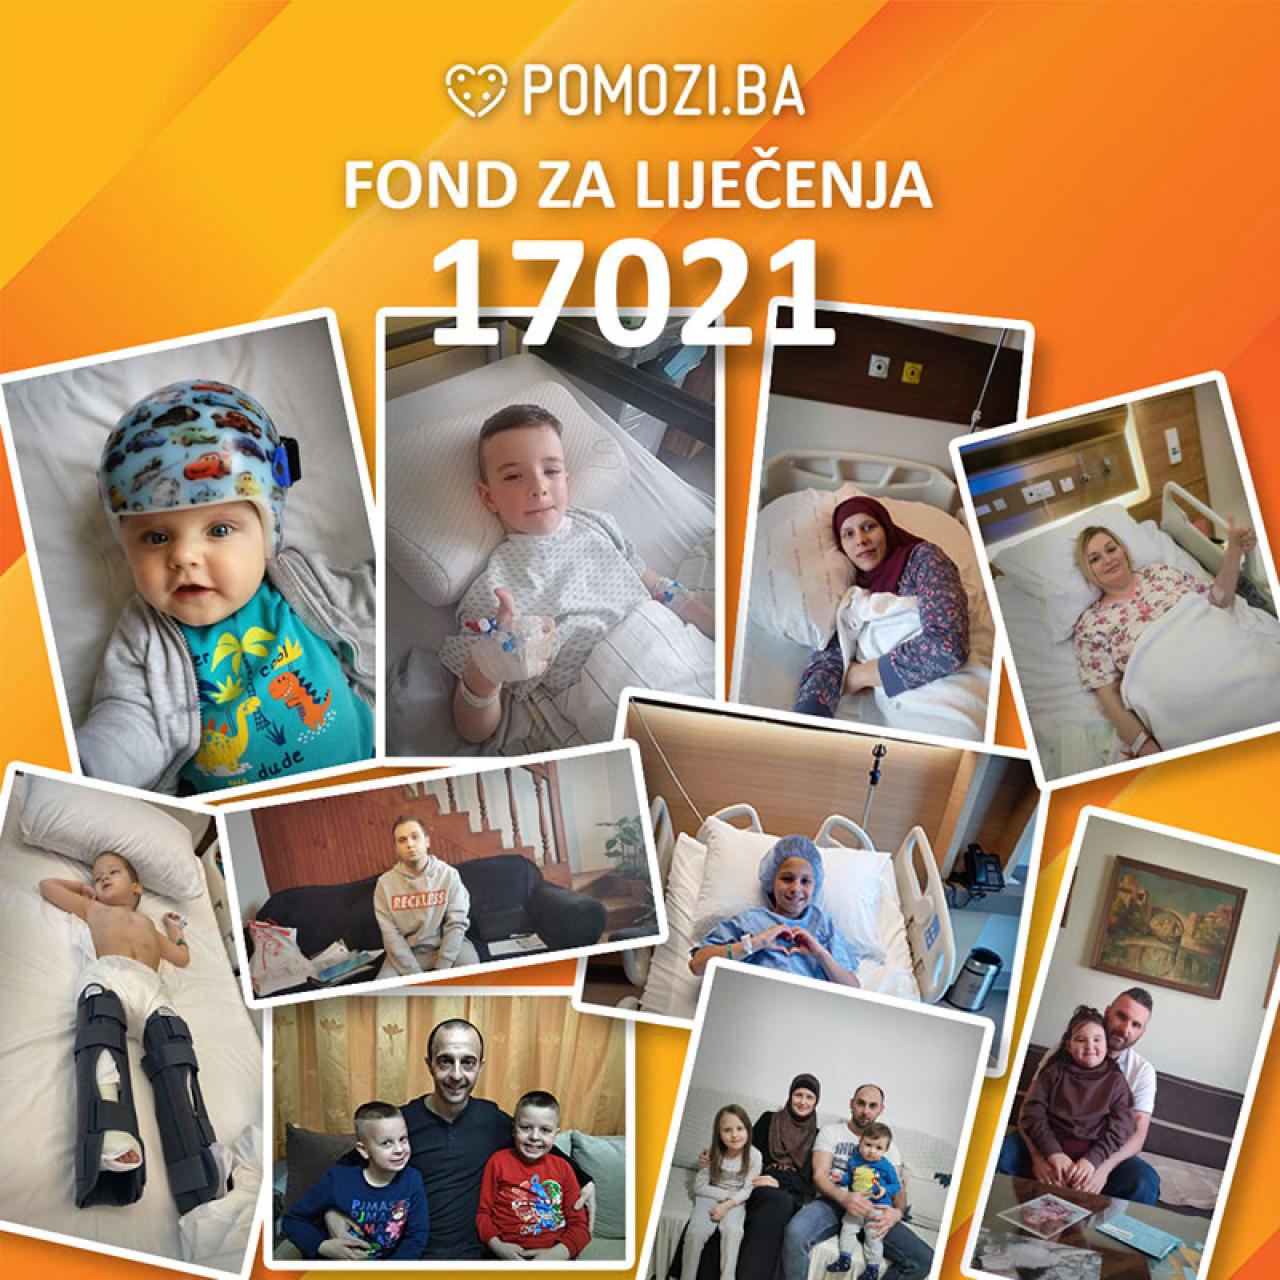 Pomozi.ba - U prvom kvartalu 2022. godine prikupili 1,2 milijuna KM za liječenja oboljelih bh. građana